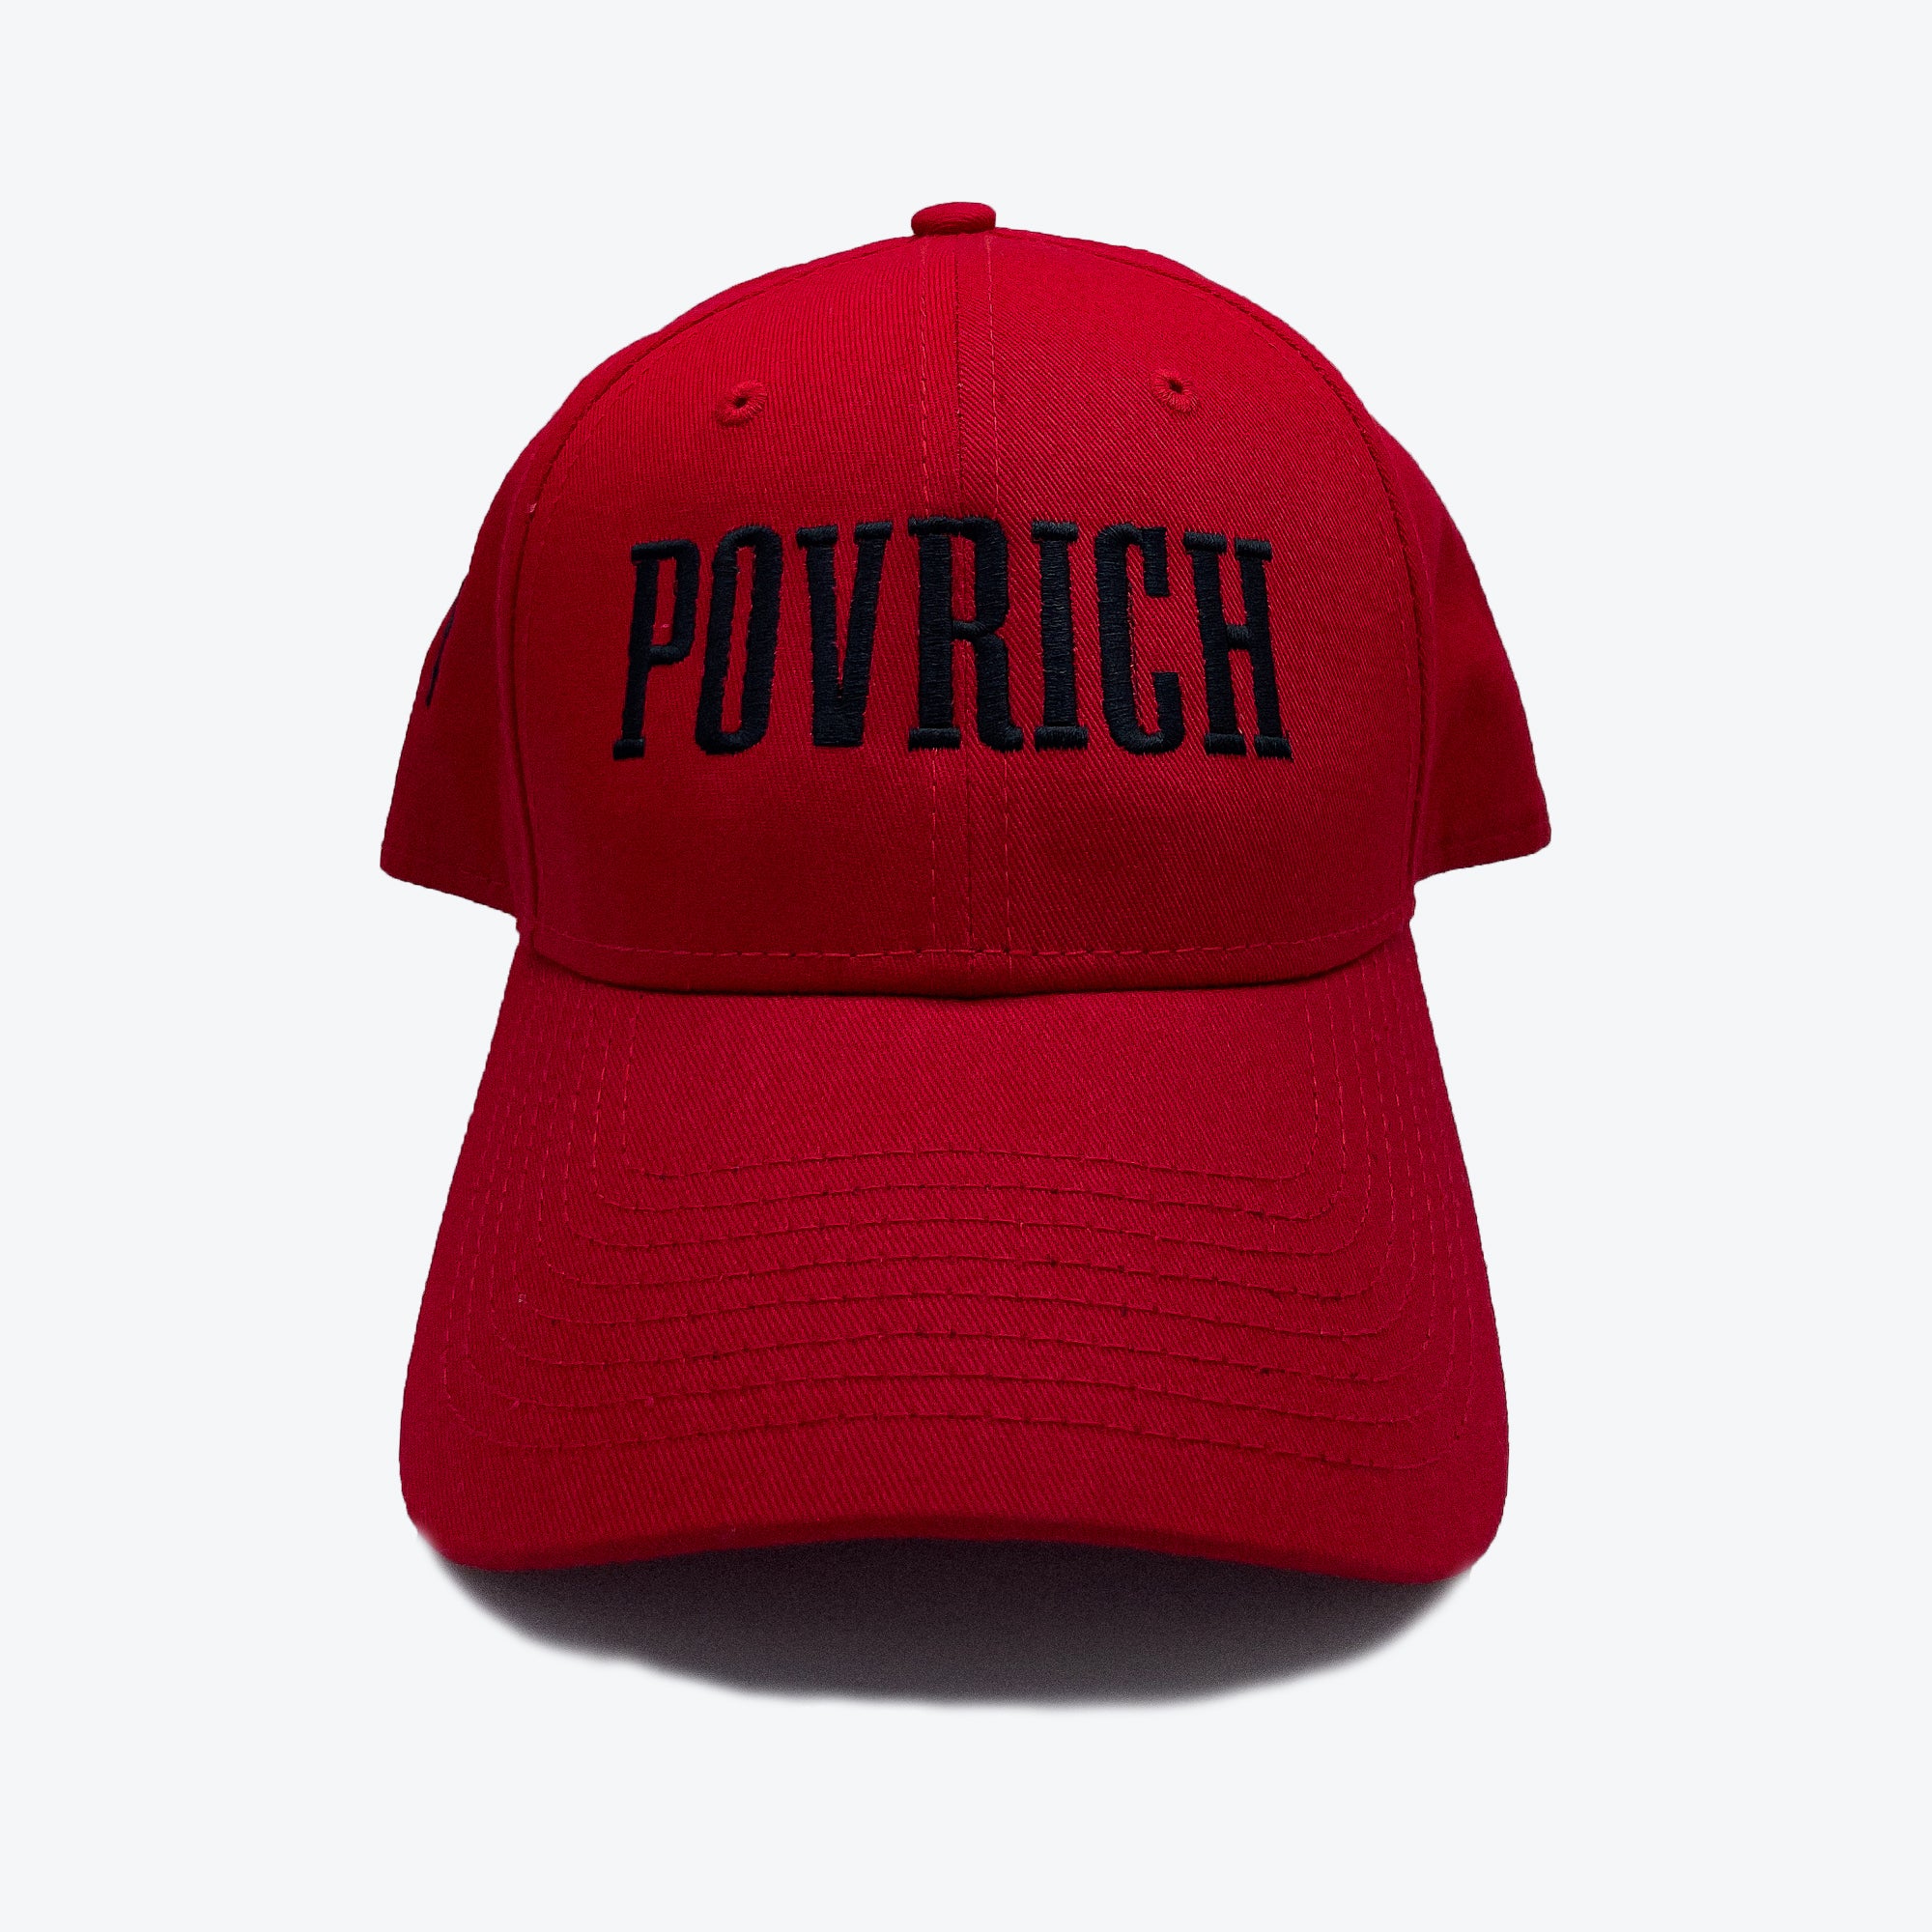 Povrich Signature Cap